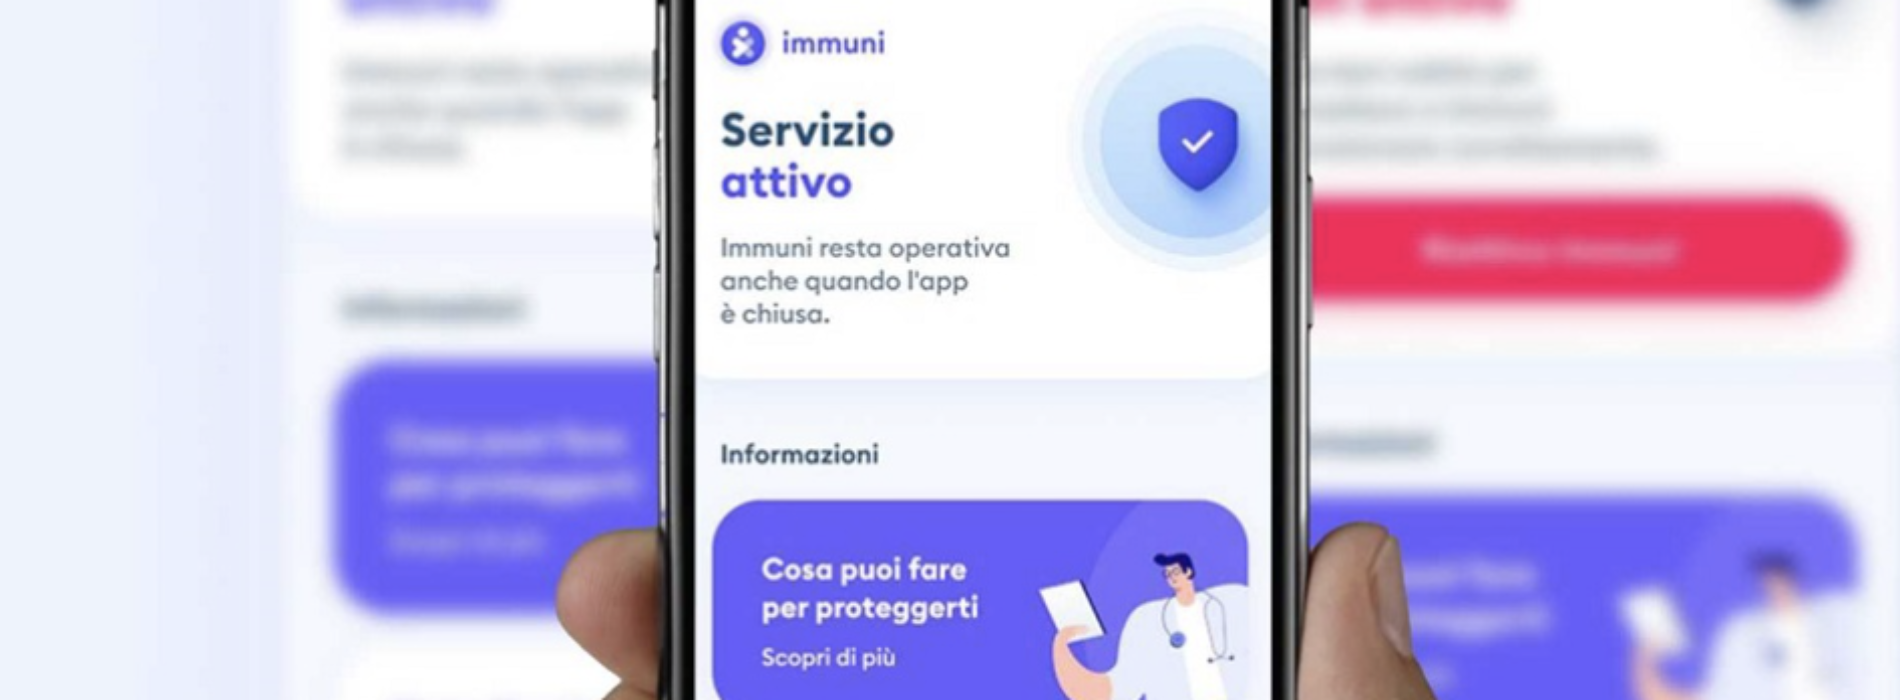 L’app “Immuni” entra nel vivo, da oggi attiva in tutta Italia